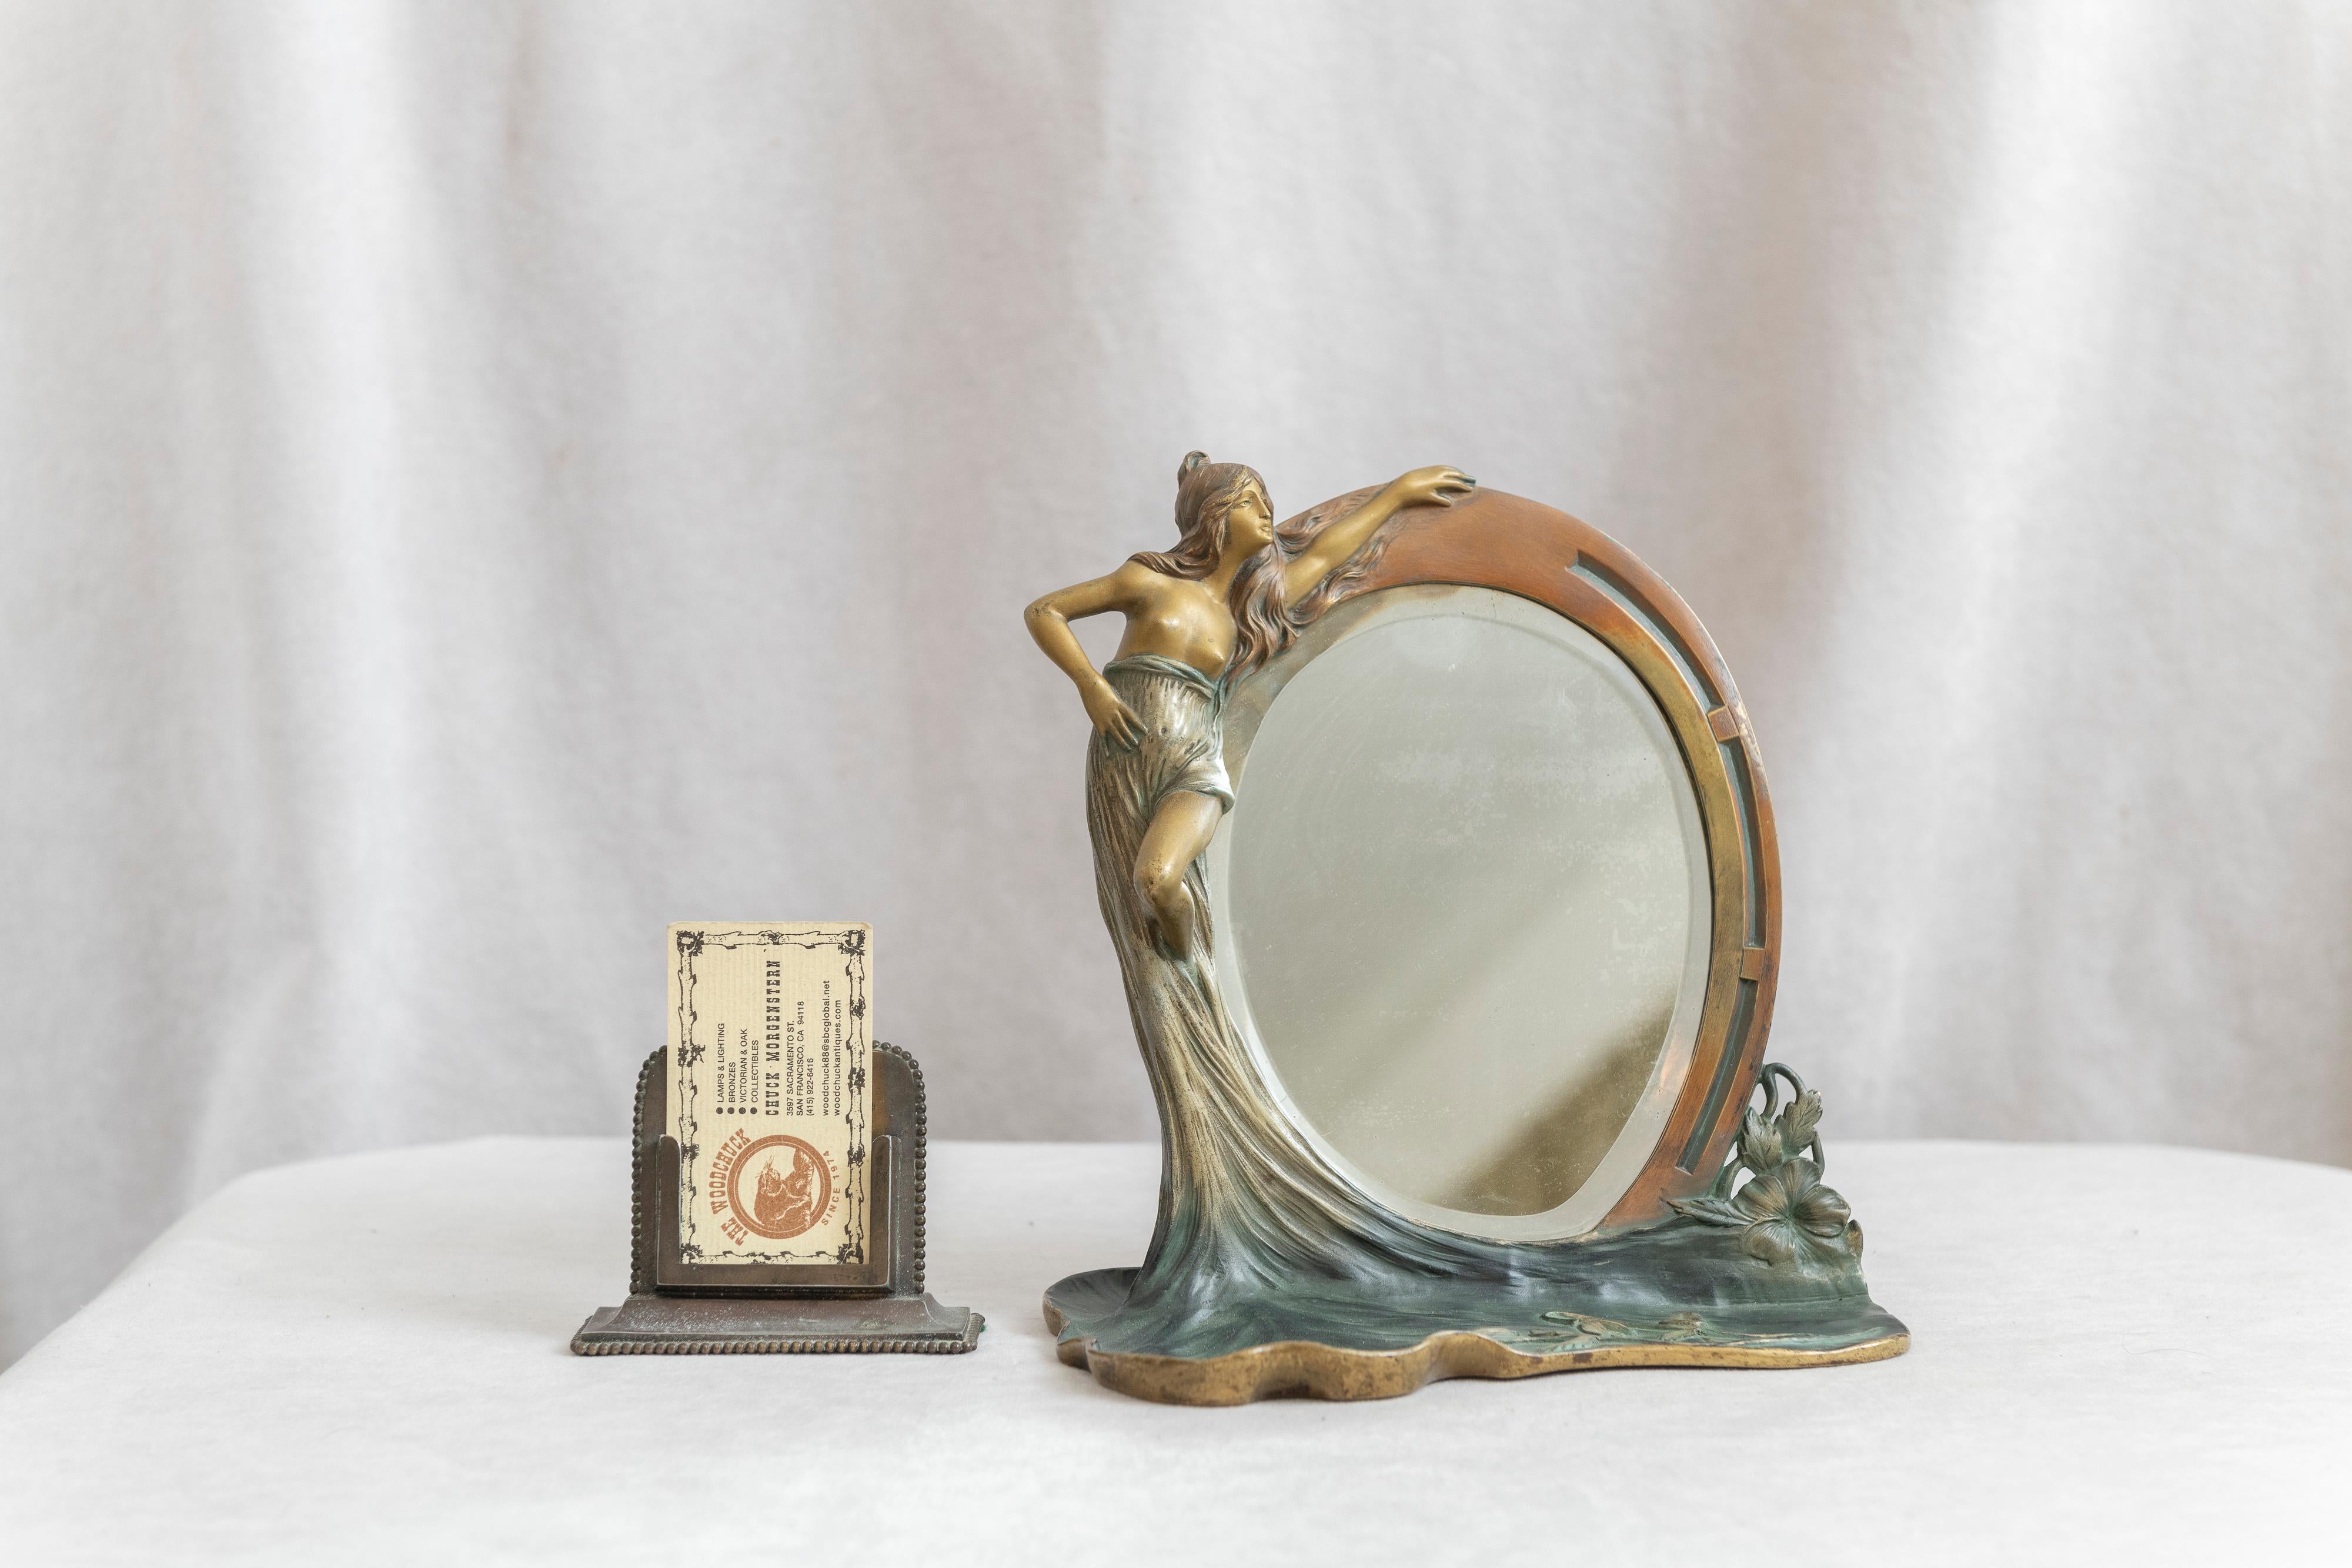 Ein schönes Beispiel für einen figuralen Jugendstilspiegel aus Bronze. Eine junge Frau hält einen abgeschrägten Spiegel, unter dem eine flache Fläche mit Blumen bedeckt ist. Besonders gut gefiel uns die flache Fläche mit ihren detailgetreuen Blumen